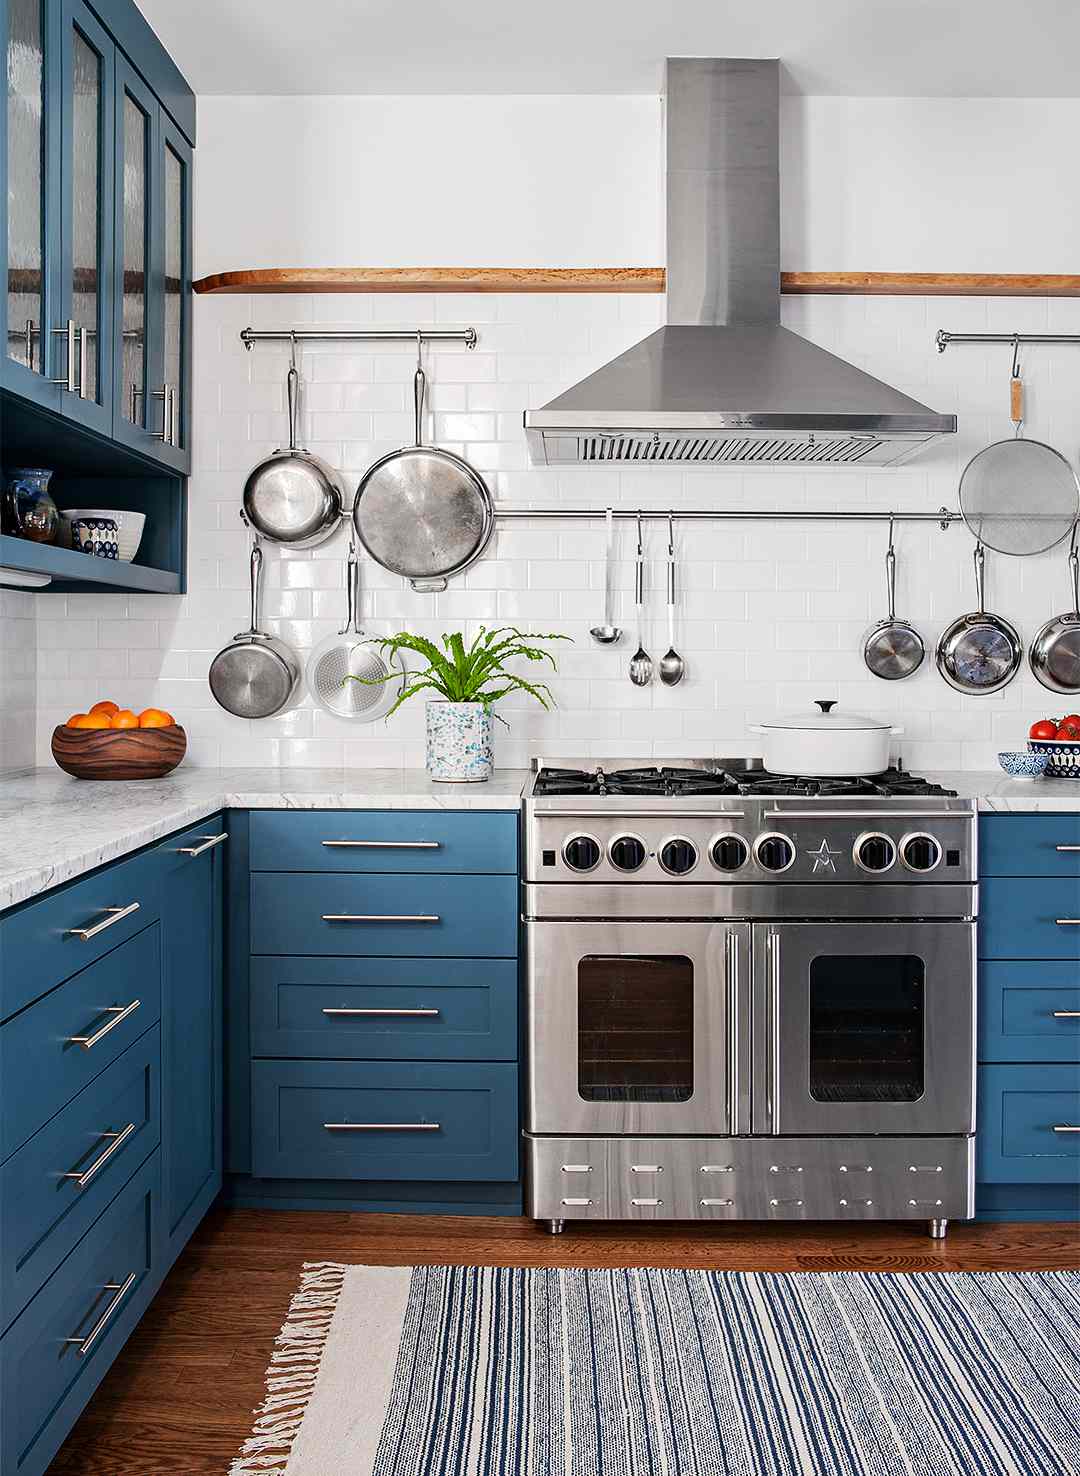 statement blue kitchen tour oven pans pots drawers